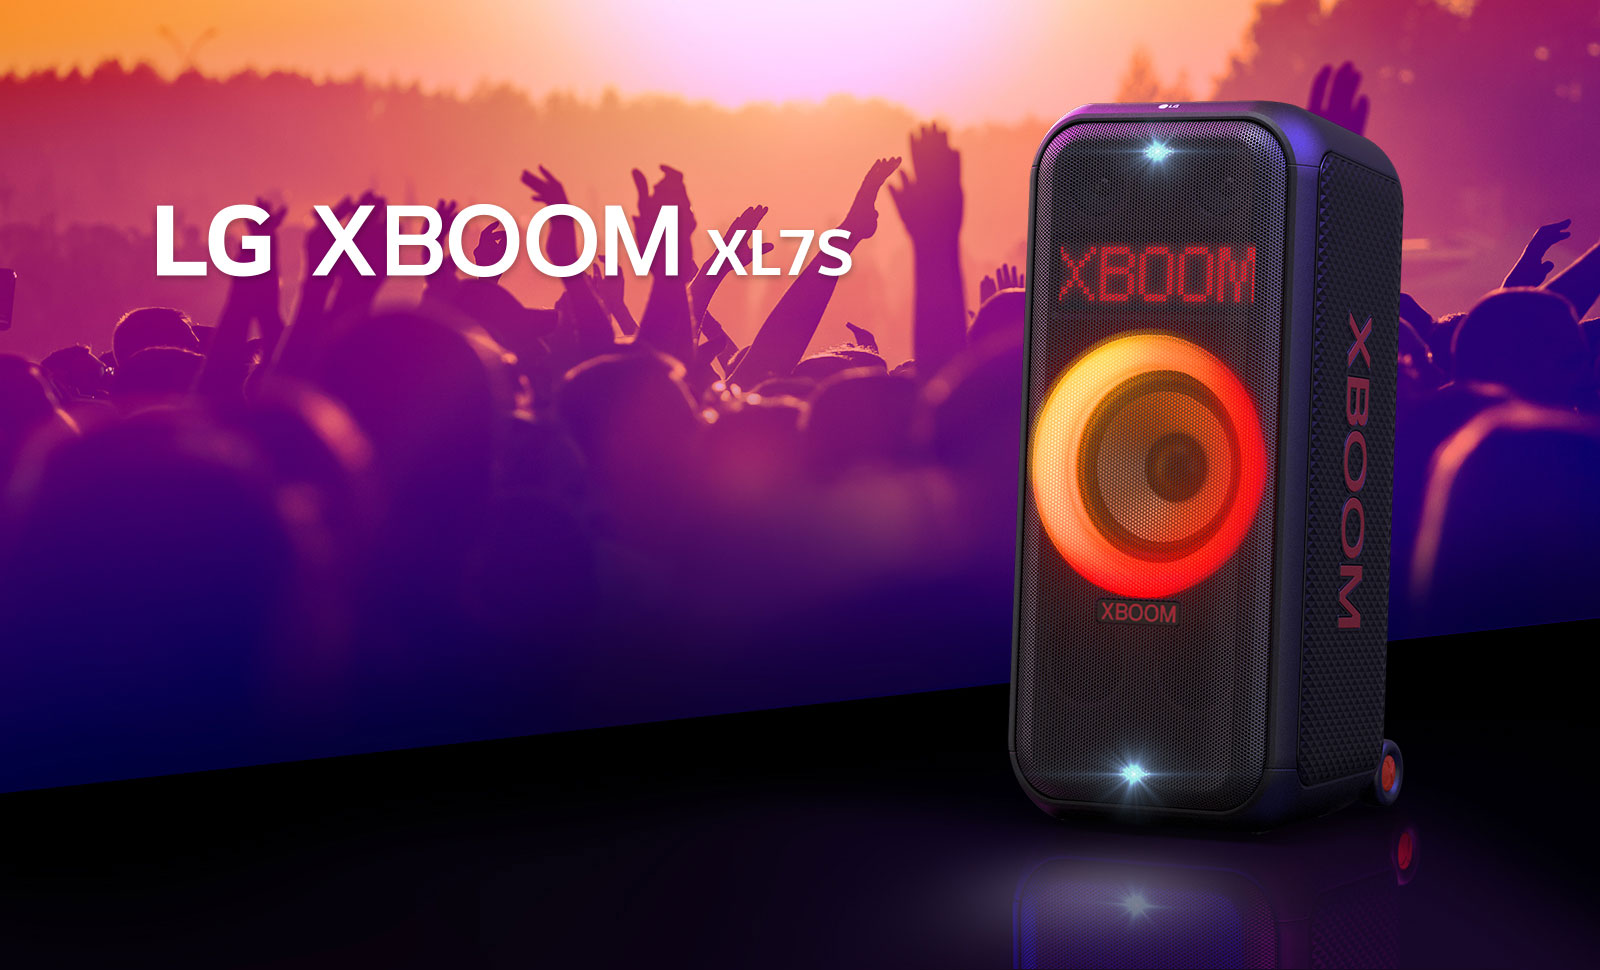 LG XBOOM XL7S 可放置在舞台上，红橙色渐变照明灯更绚丽。亦可让人们享受音乐。